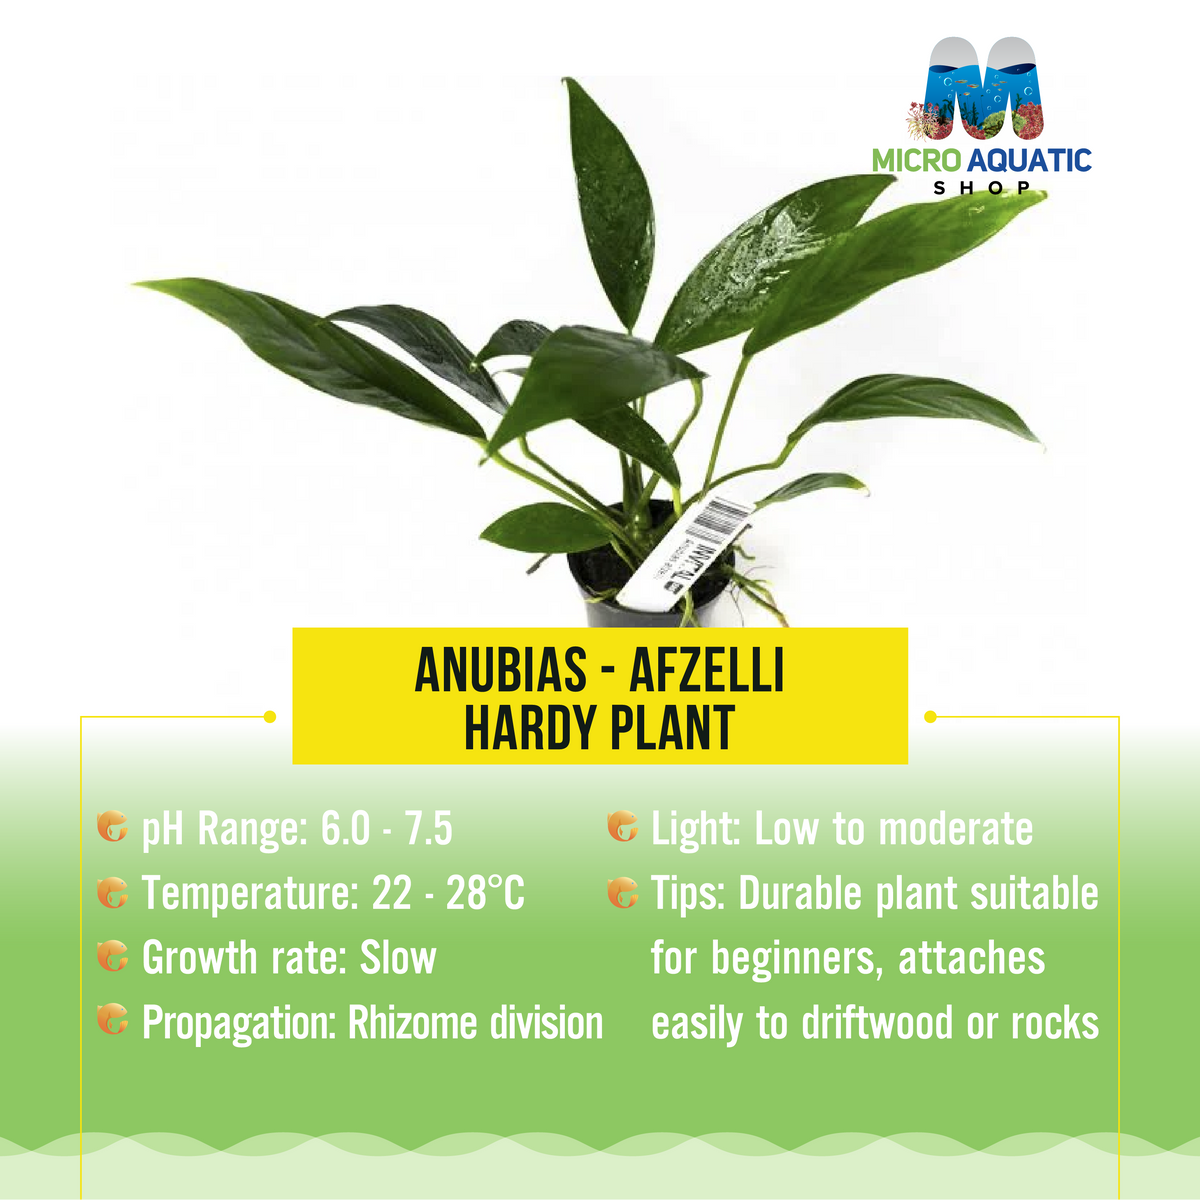 Anubias - Afzelli - Hardy Plant